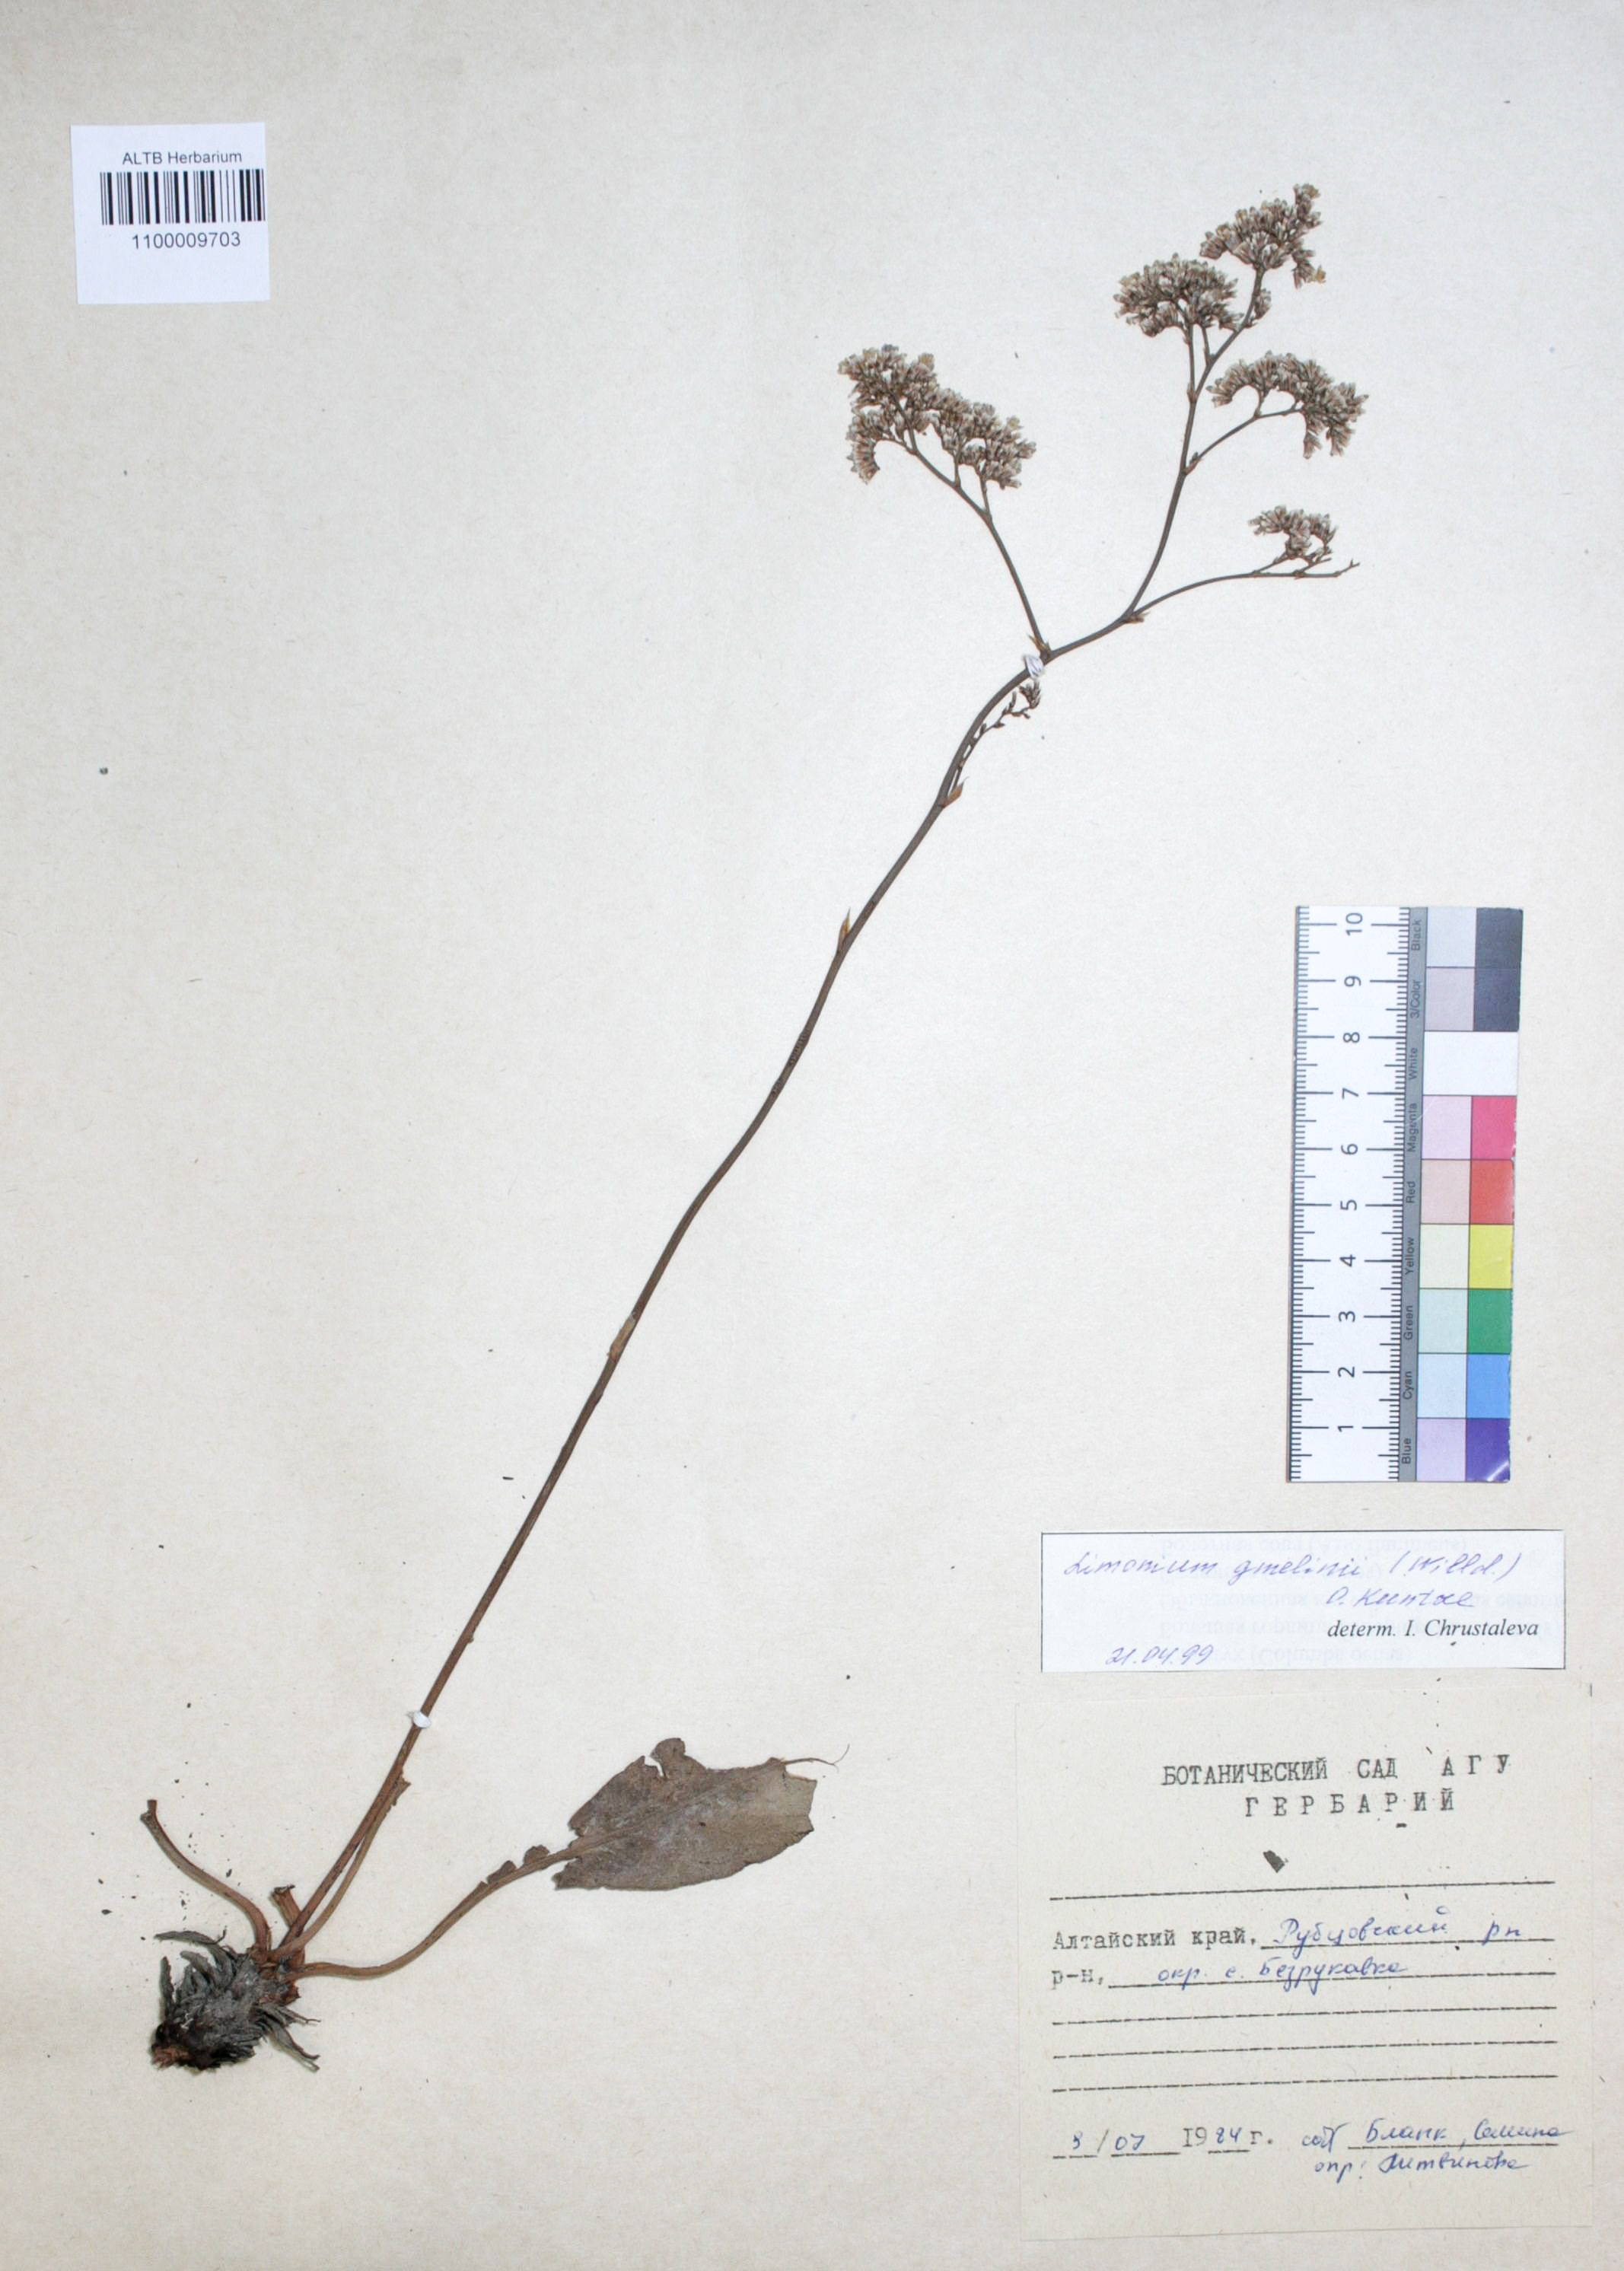 Limonium gmelinii (Willd.) Kuntze